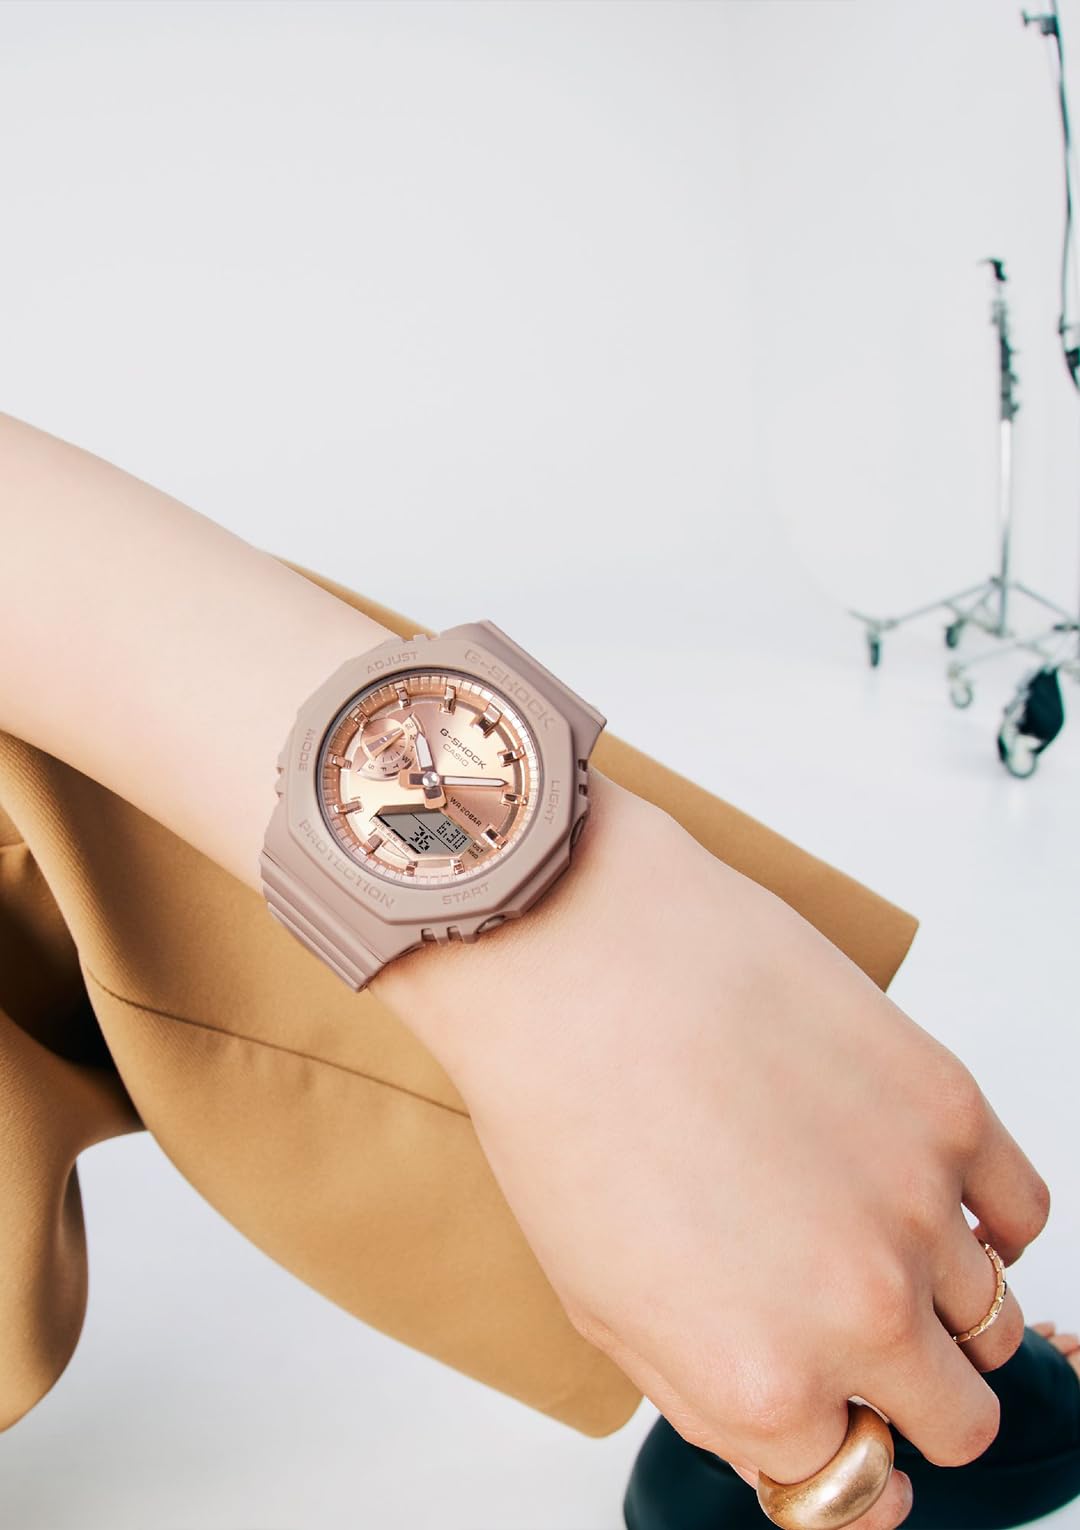 [カシオ] 腕時計 ジーショック 【国内正規品】 ミッドサイズモデル GMA-S2100MD-4AJF レディース ピンクベージュ - BanzaiHobby